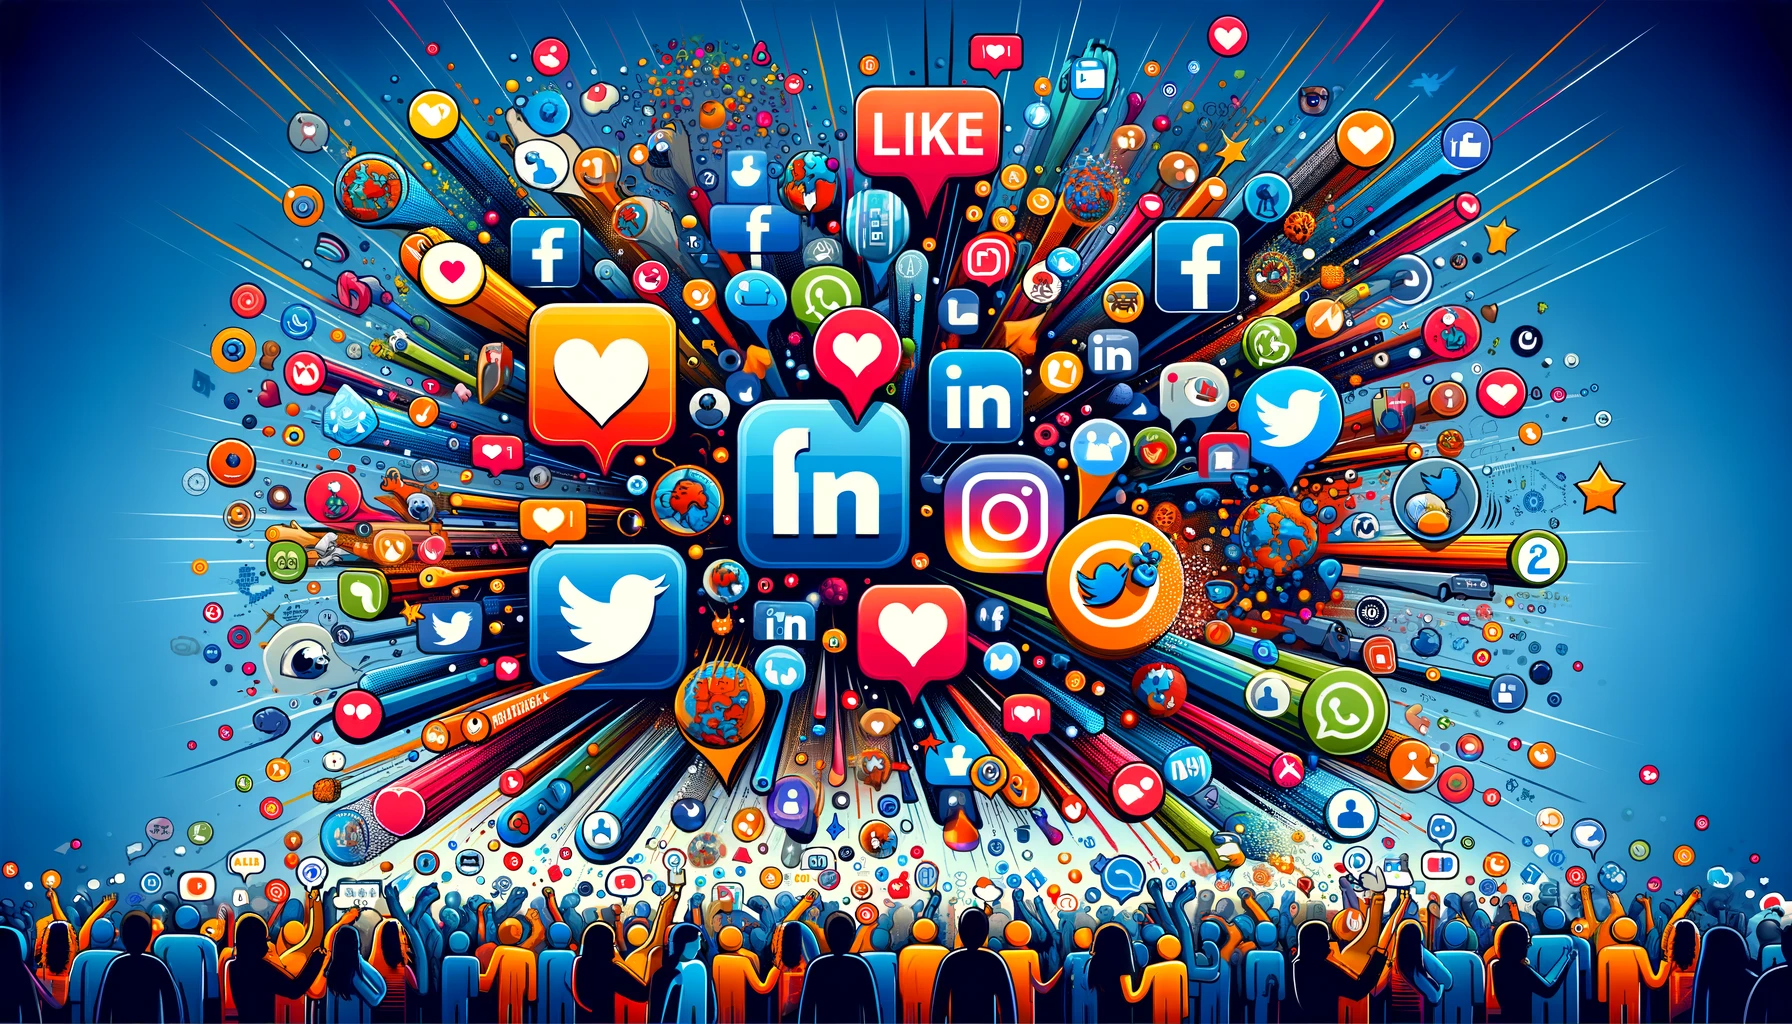 Cette illustration dynamique présente une variété d'icônes de réseaux sociaux comme Facebook, Twitter et LinkedIn, avec des personnages autour qui interagissent en aimant, commentant et partageant le contenu, symbolisant la nature interactive des médias sociaux.